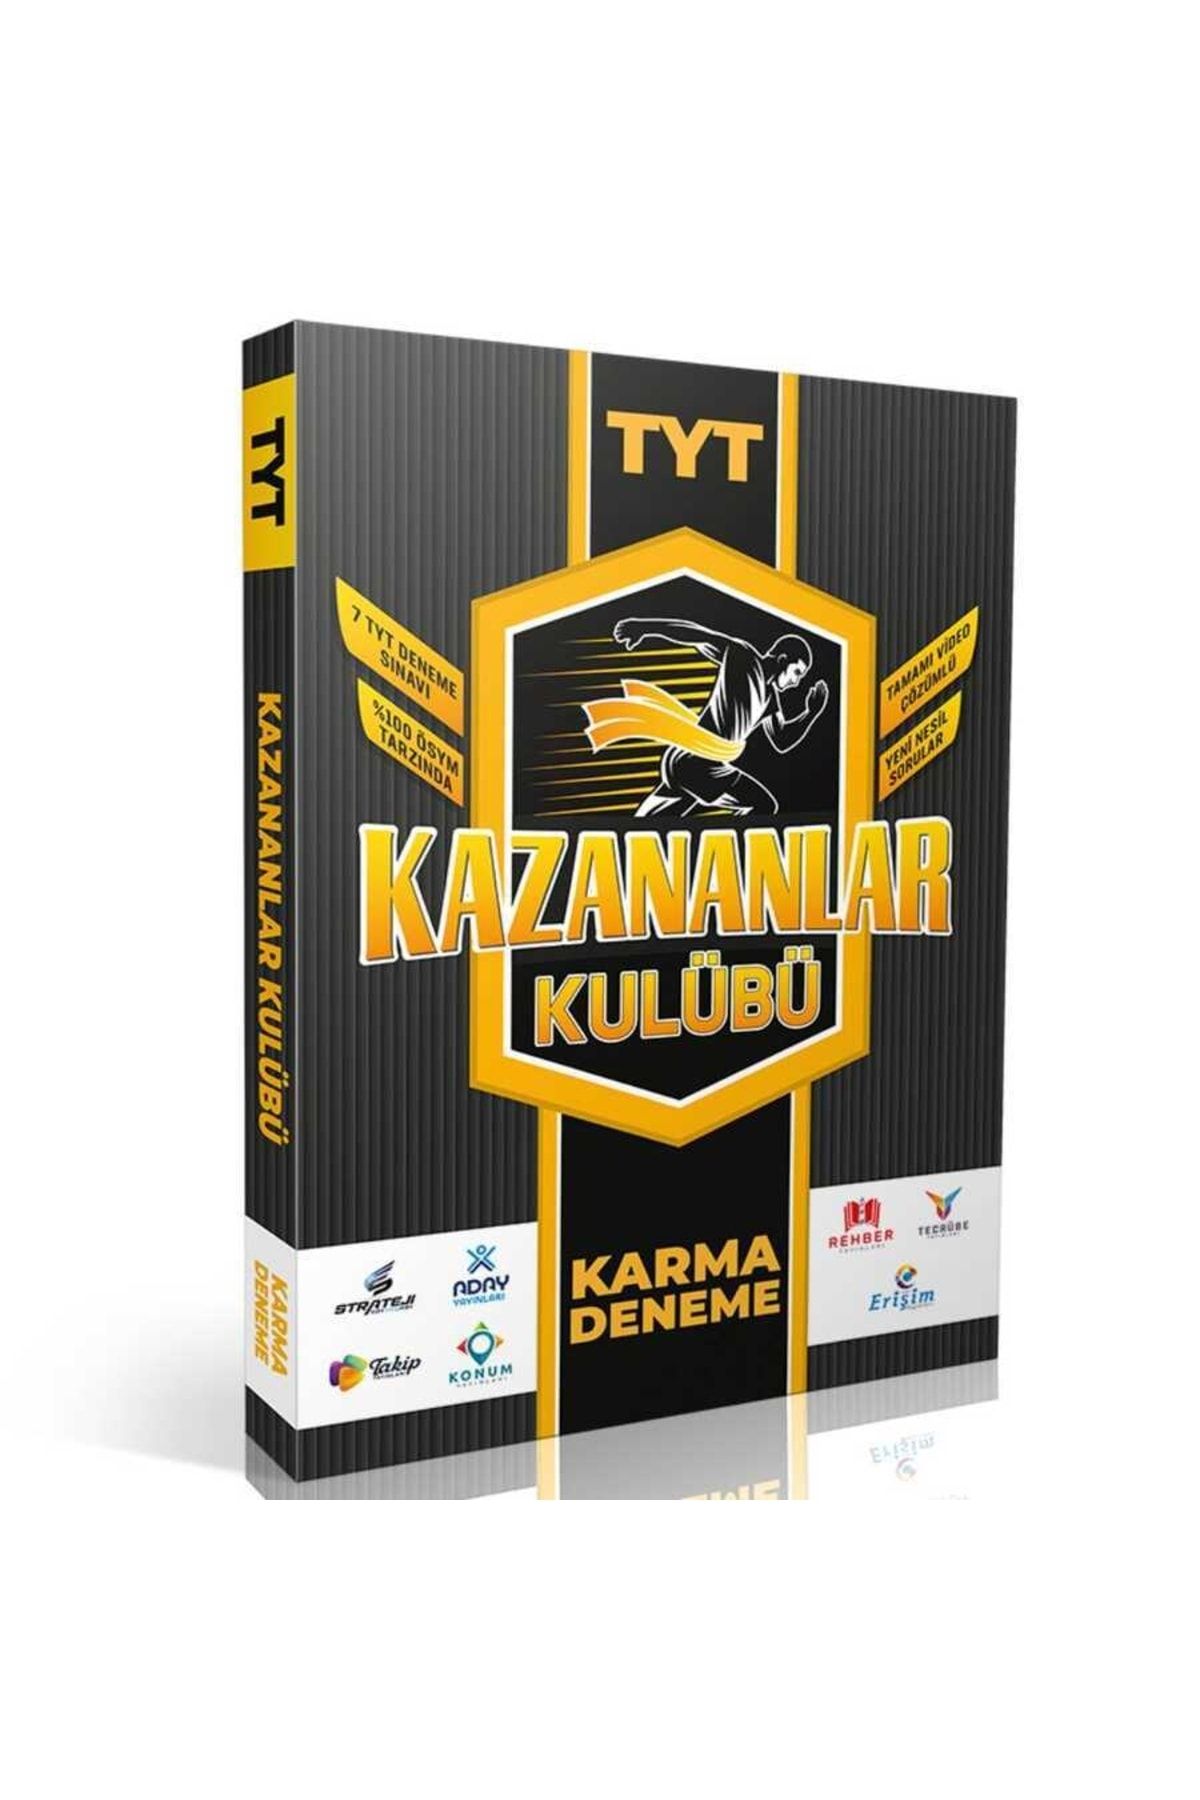 PRF Paraf Yayınları Prf Paraf Yayınları Tyt Kazananlar Kulübü 7 Video Çözümlü Karma Deneme